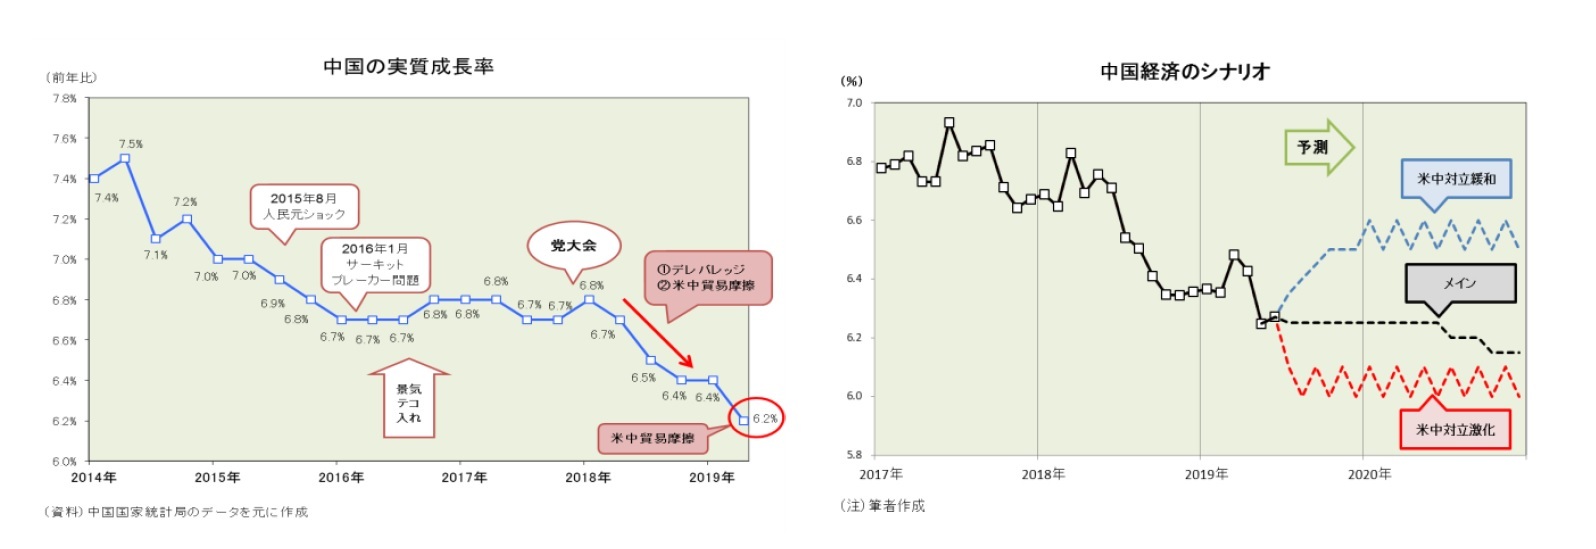 中国の実質成長率/中国経済のシナリオ